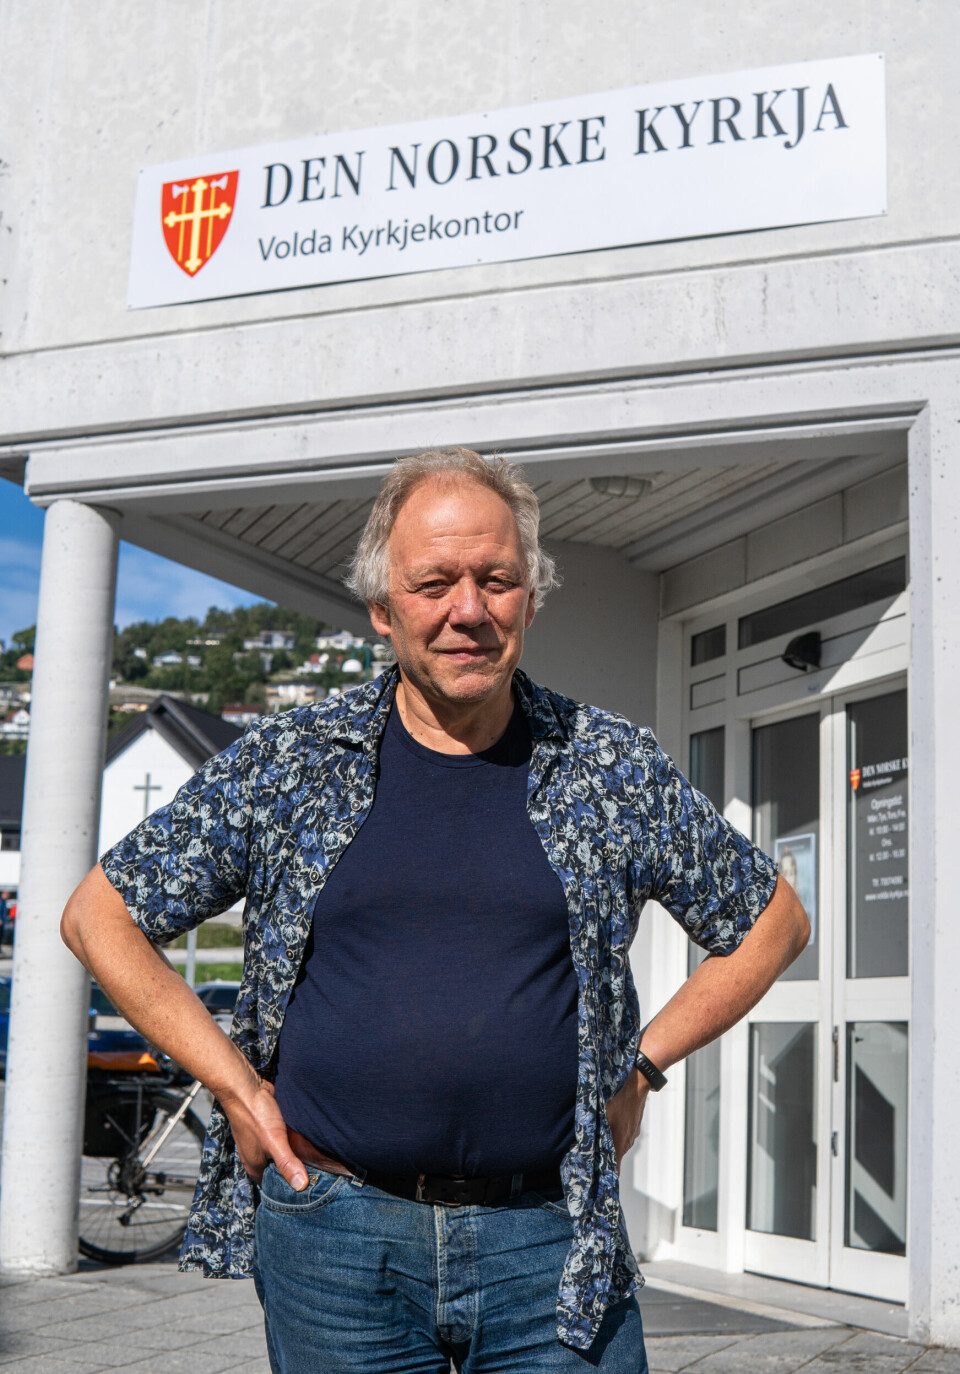 Jostein Stråbø tykkjer det er kjekt at folk kjem innom kyrkjekontoret for å røyste.